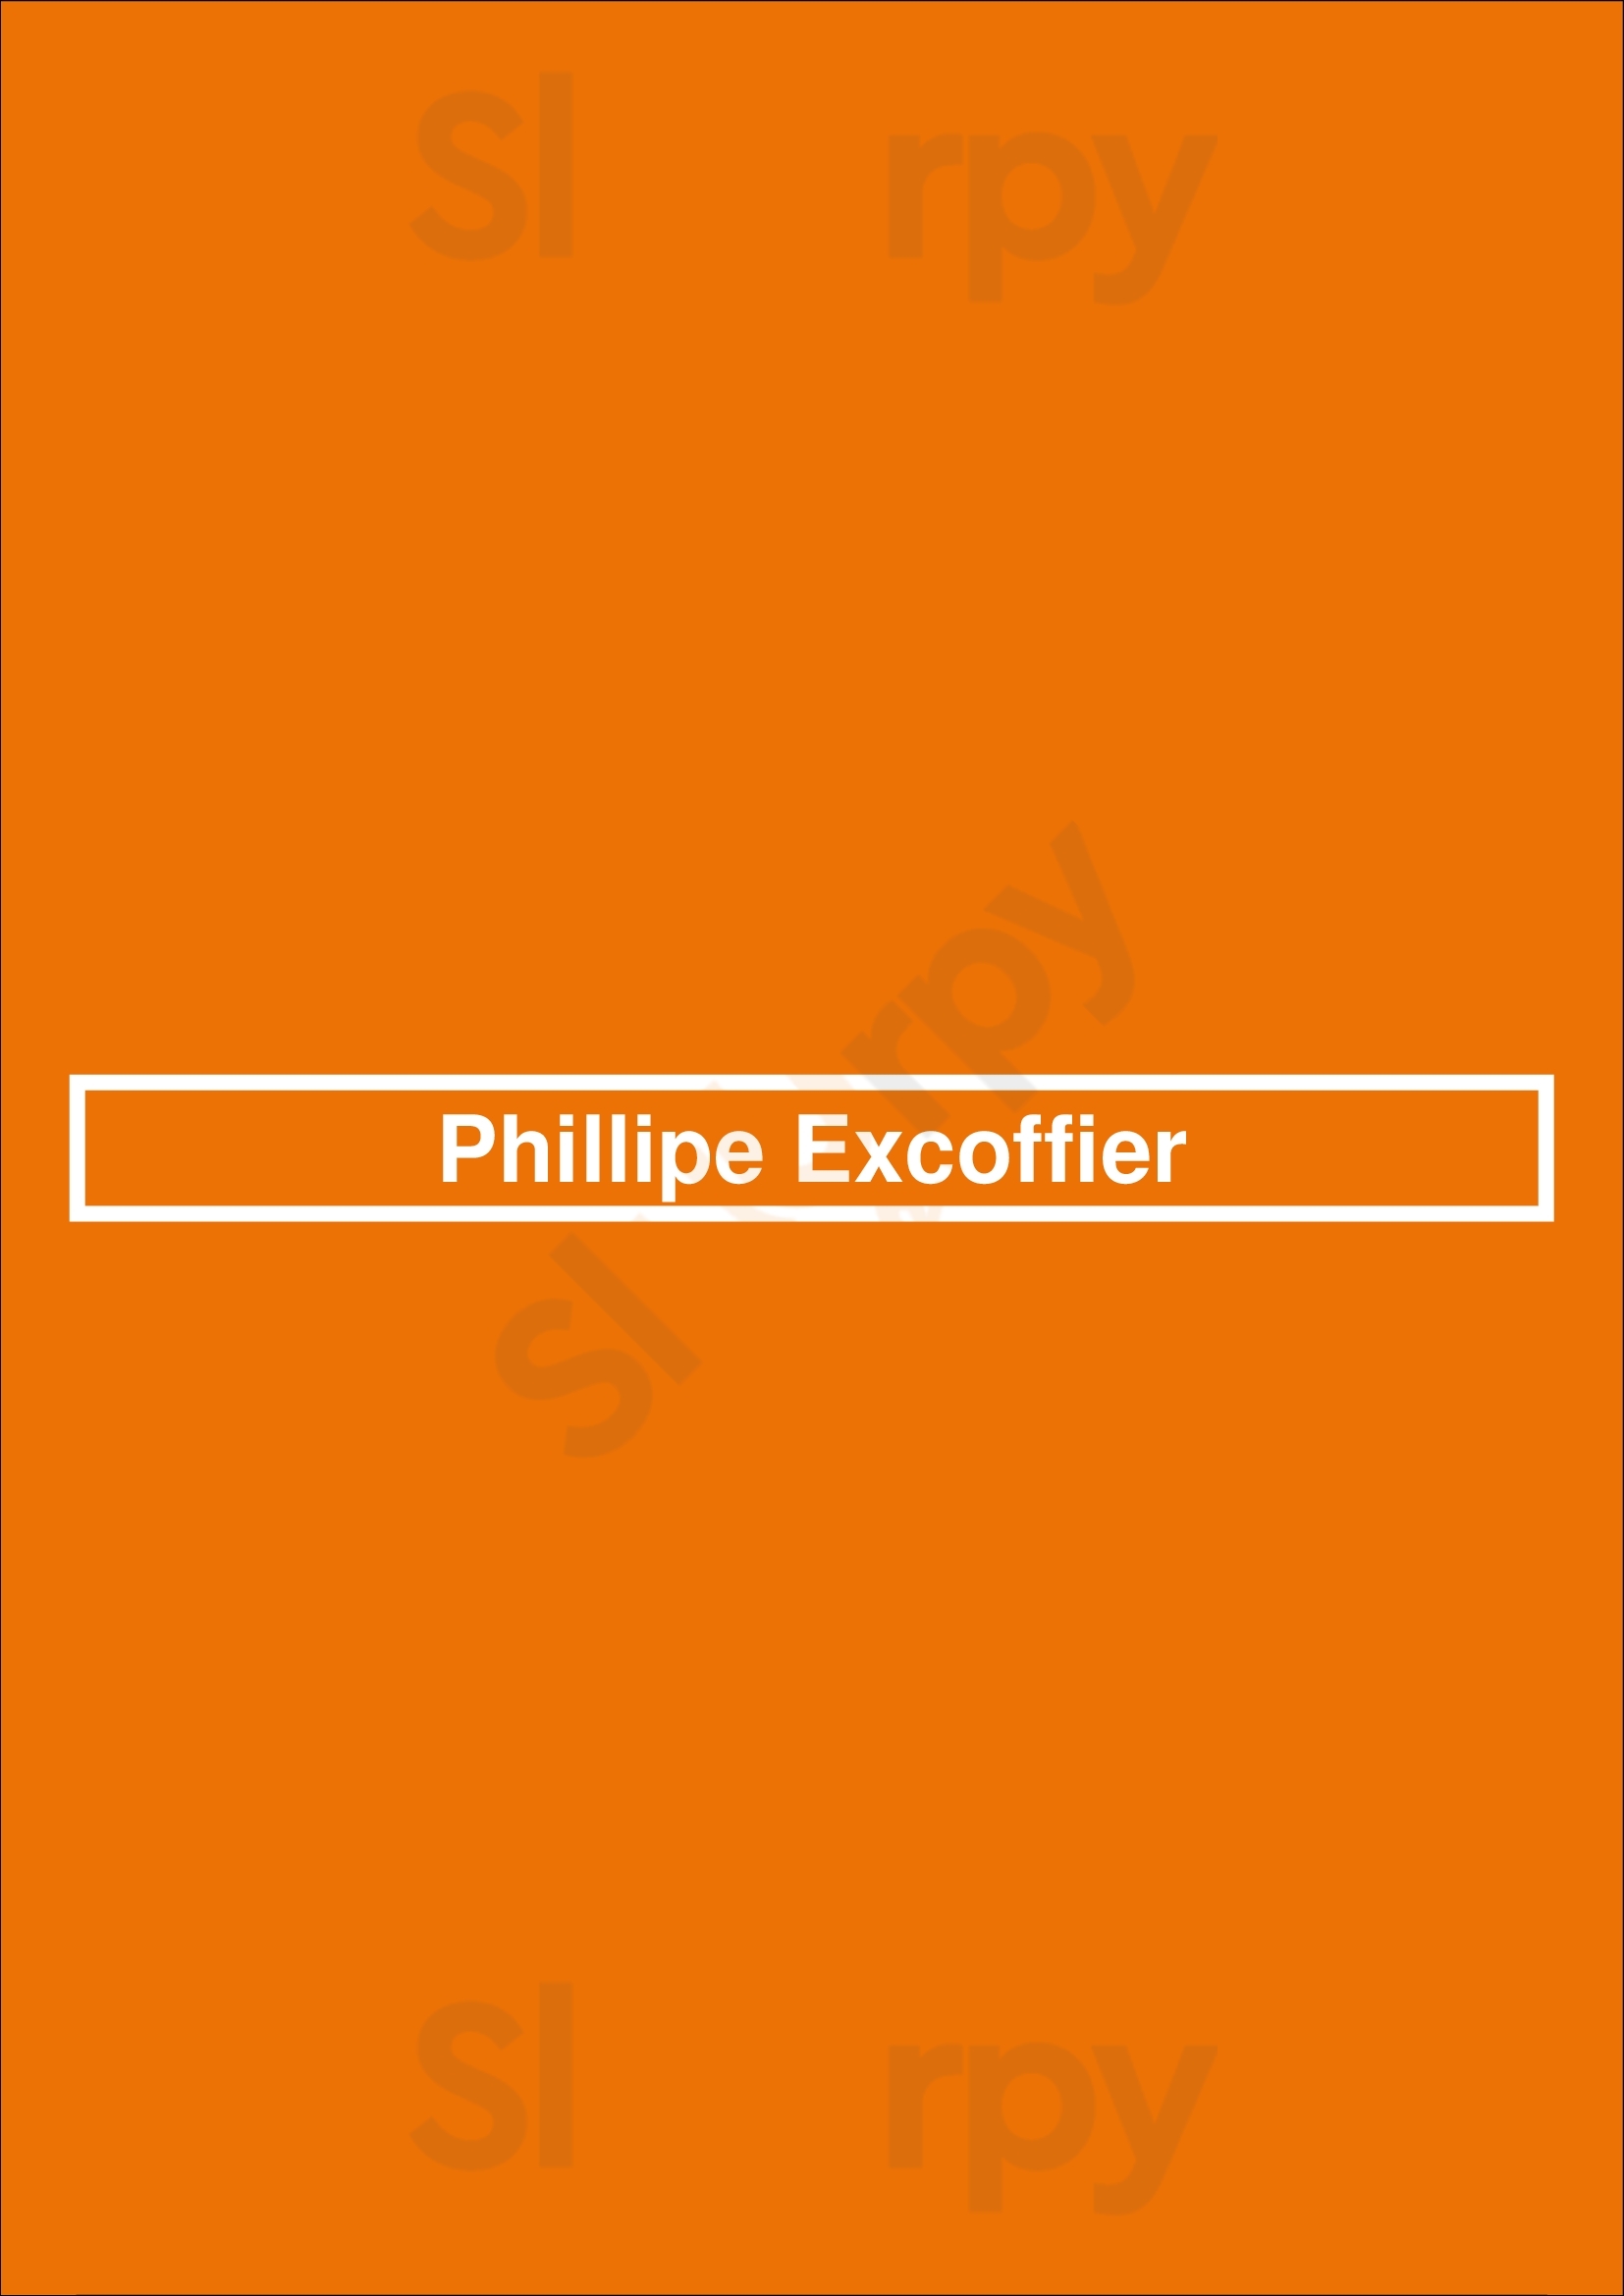 Phillipe Excoffier Paris Menu - 1